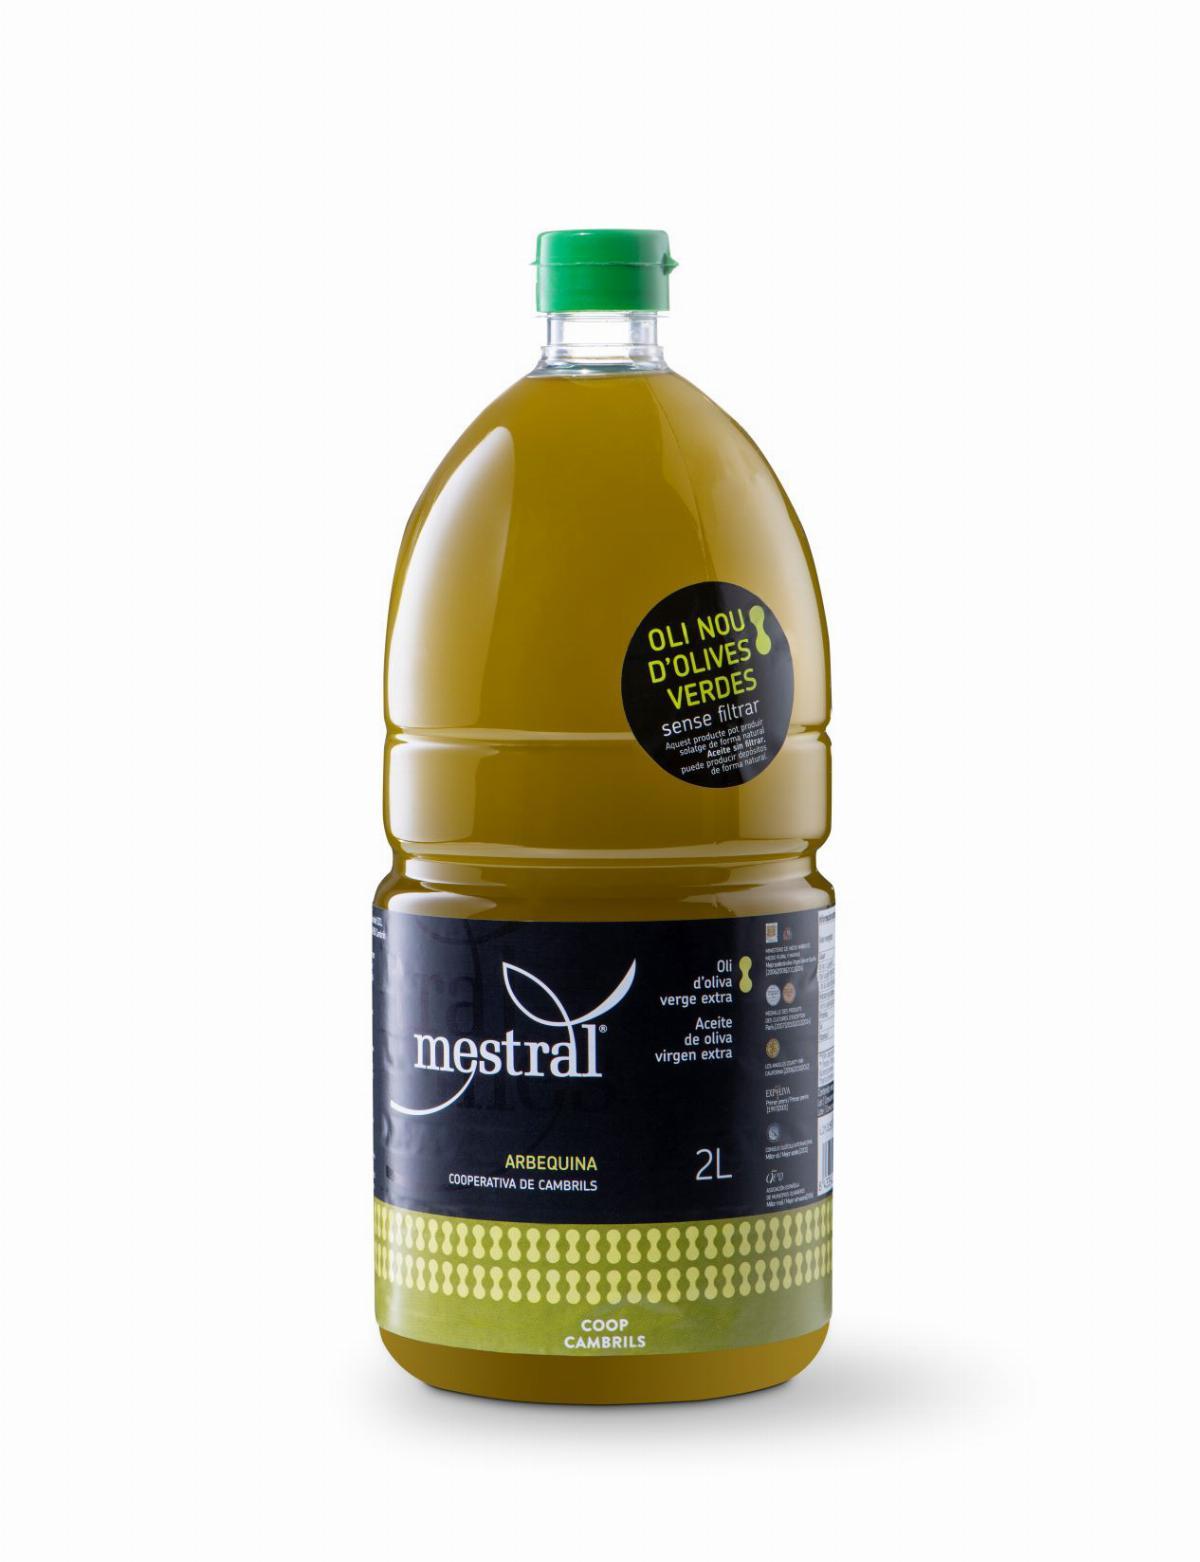 Olis i infusionats - Oli d'oliva Verge Extra Mestral DEL RAIG (sense filtrar)  PET 2 Litres DOP Siurana - Mestral Cambrils